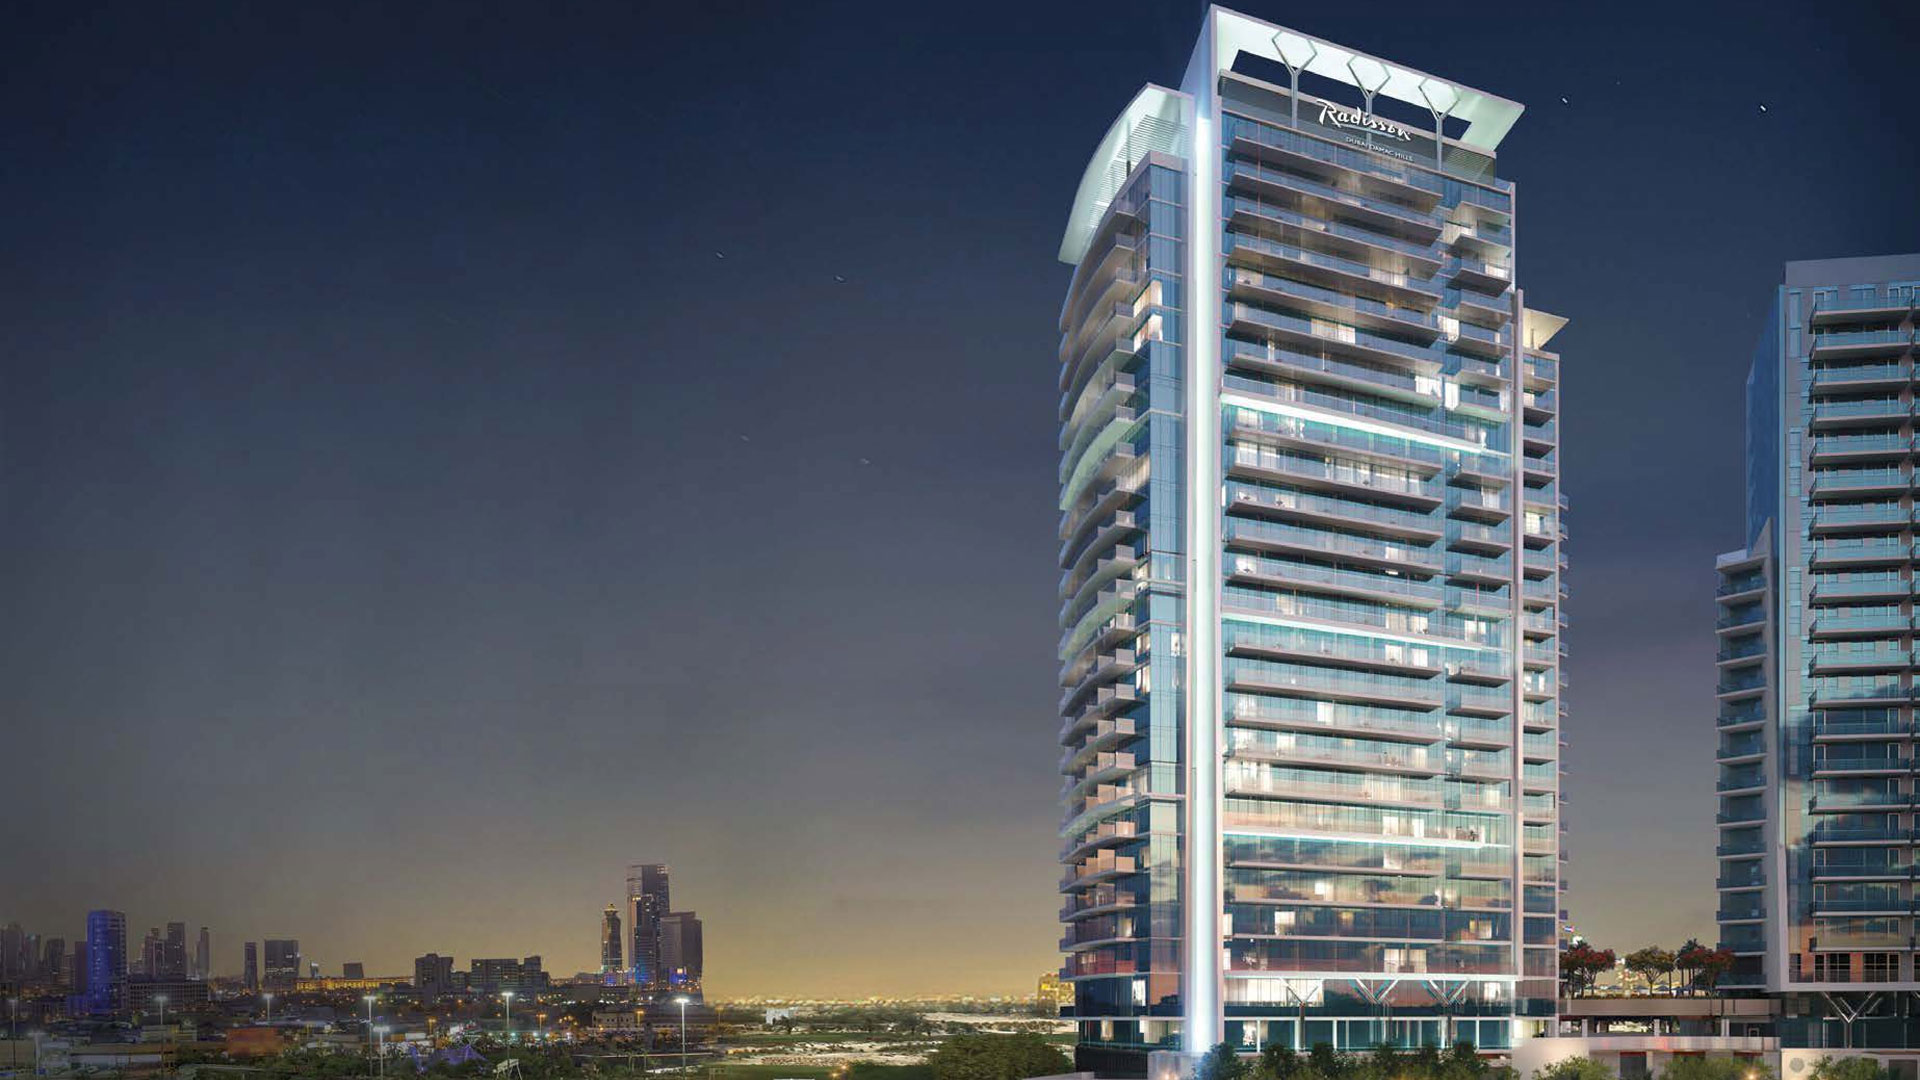 RADISSON HOTEL by Damac Properties in DAMAC Hills, Dubai, UAE